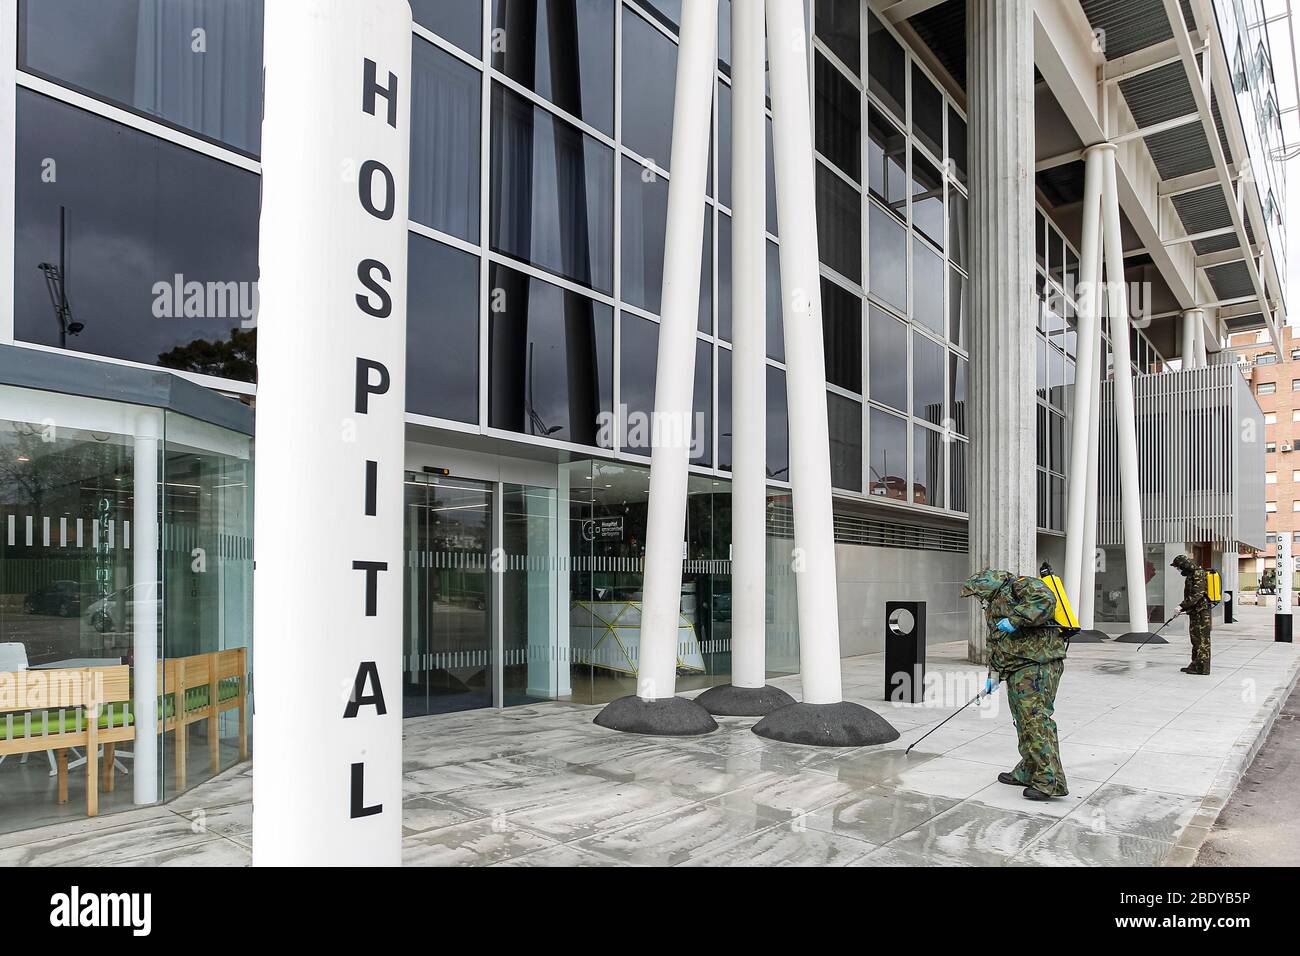 Carthagène, Espagne. 9 avril 2020. La Marine espagnole fumigre les hôpitaux et les centres médicaux pour prévenir la propagation du coronavirus © ABEL F. ROS/Alay Live News Banque D'Images